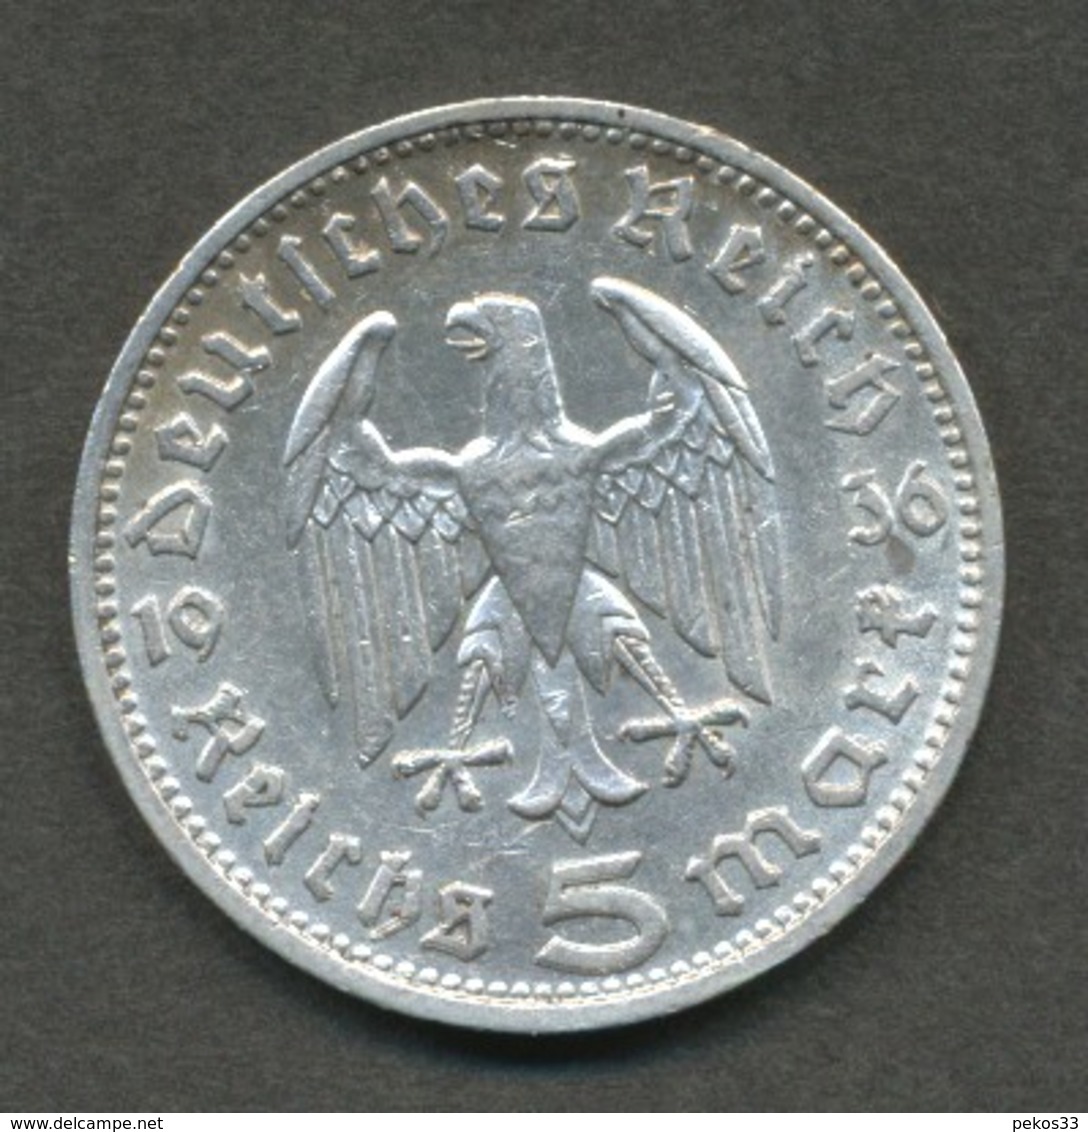 Münzen - 5 Deutsche Mark D 1936 Bundesrepublik Deutschland - 5 Reichsmark